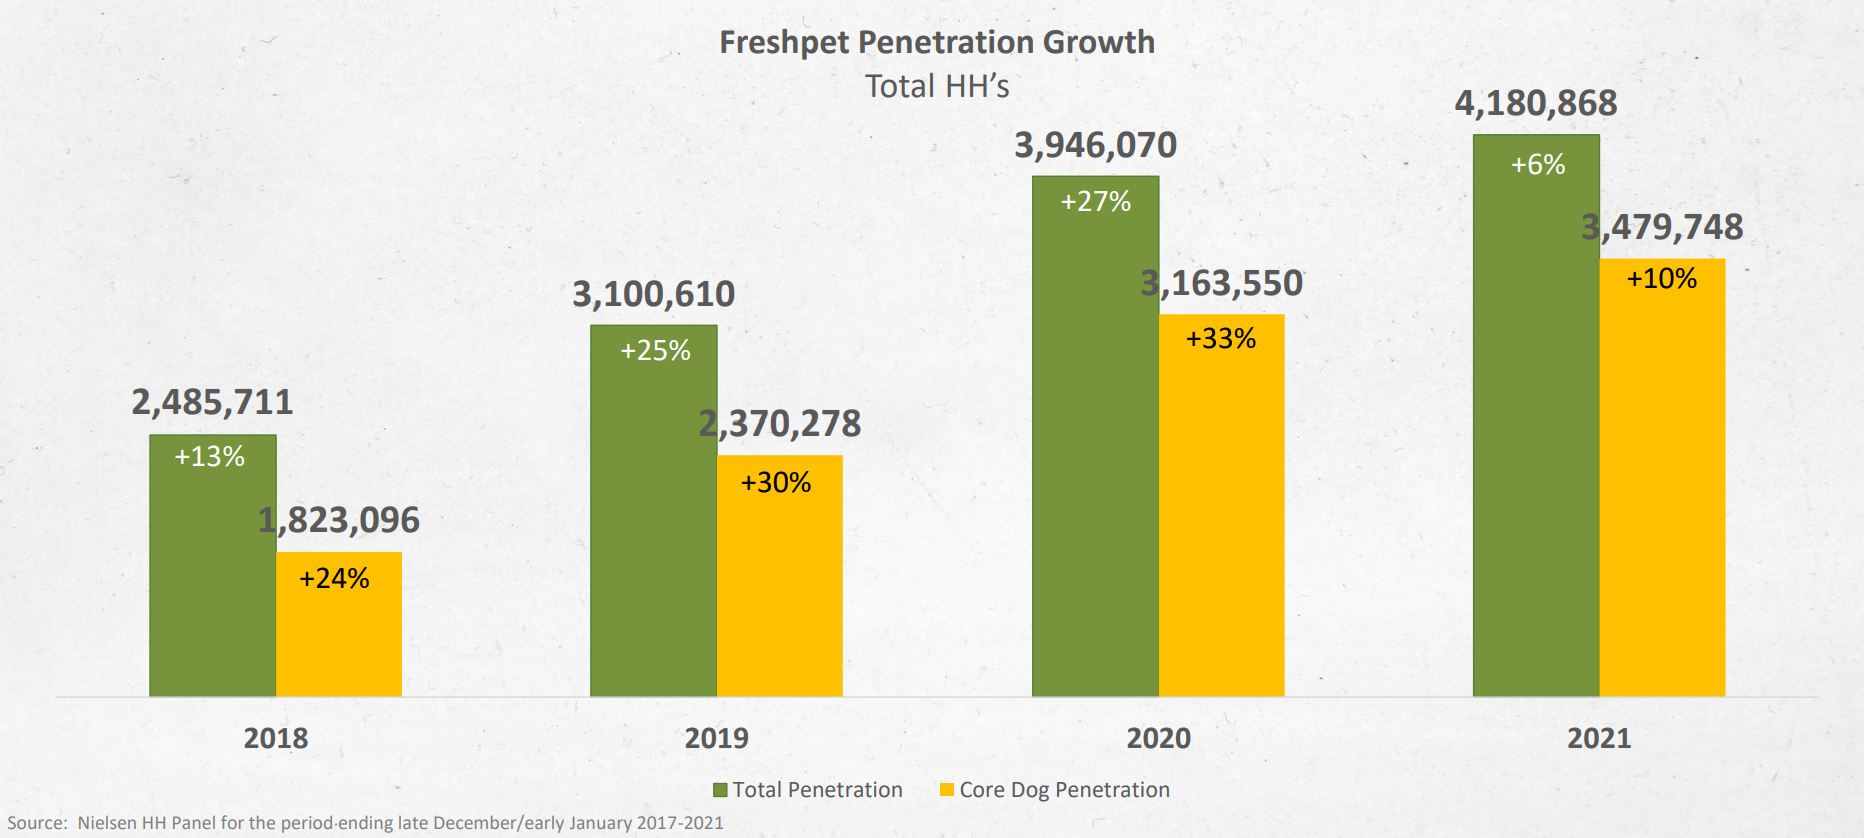 Freshpet household penetration trends 2018-2021